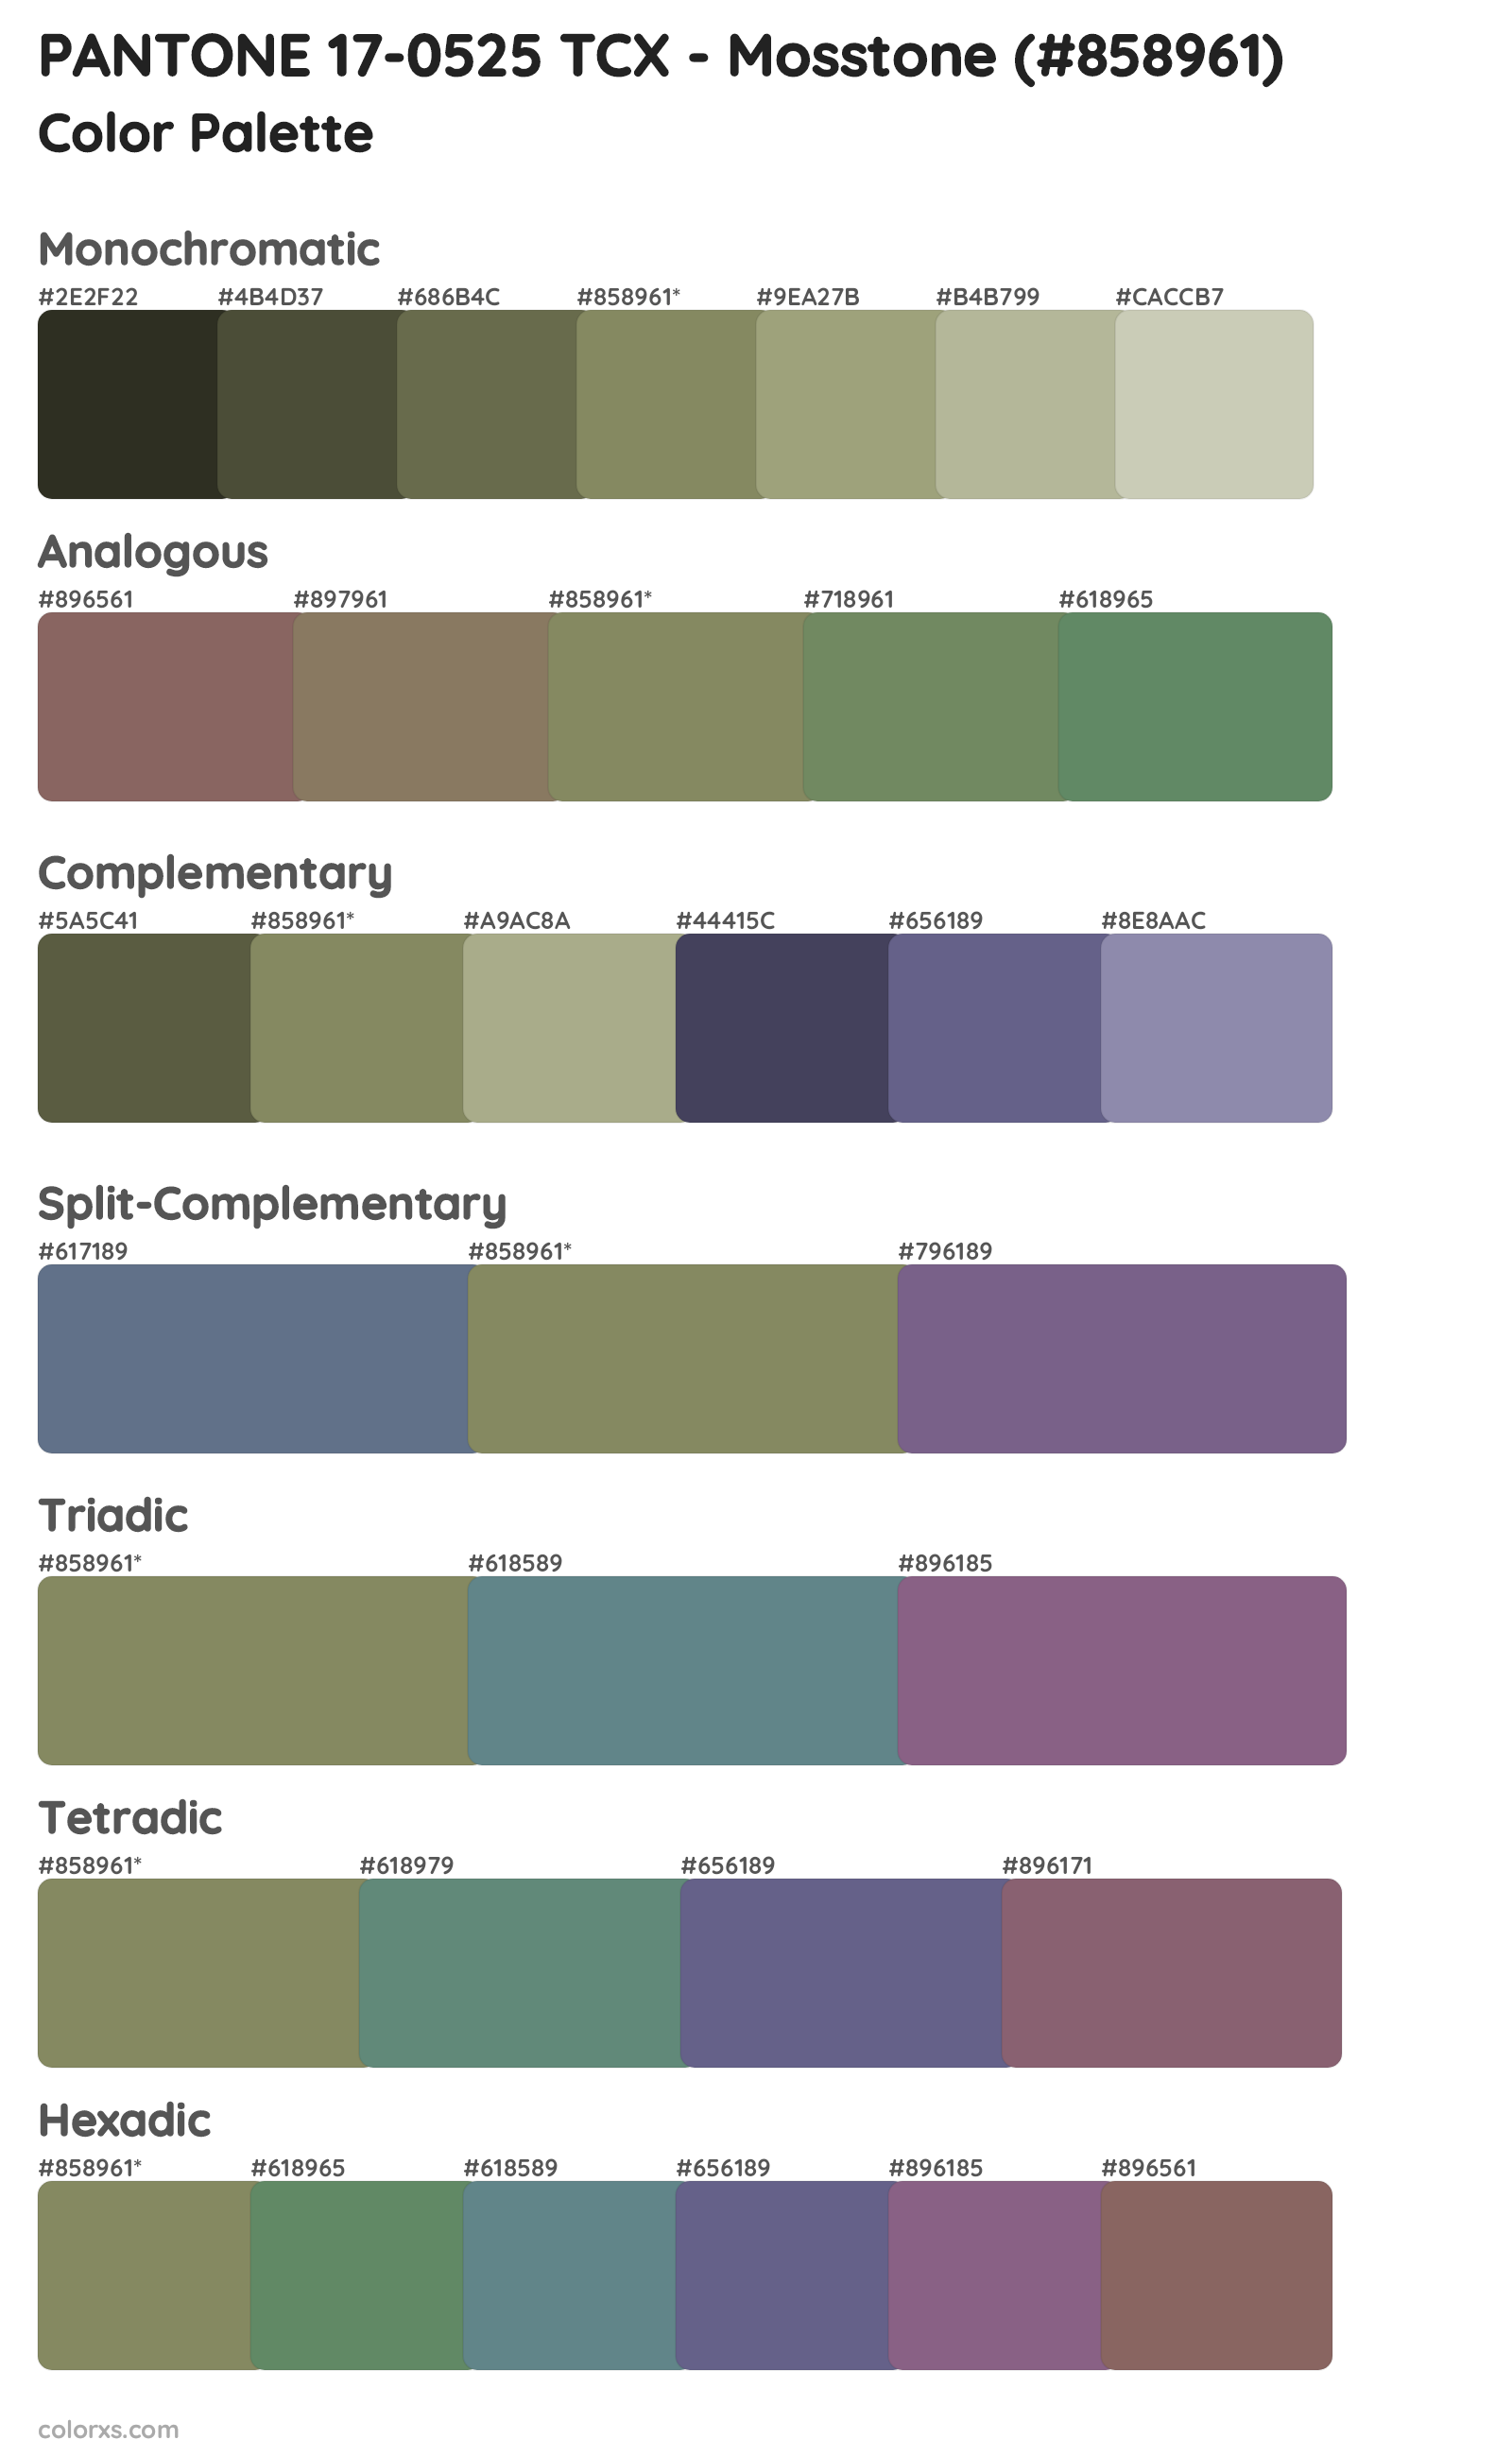 PANTONE 17-0525 TCX - Mosstone Color Scheme Palettes